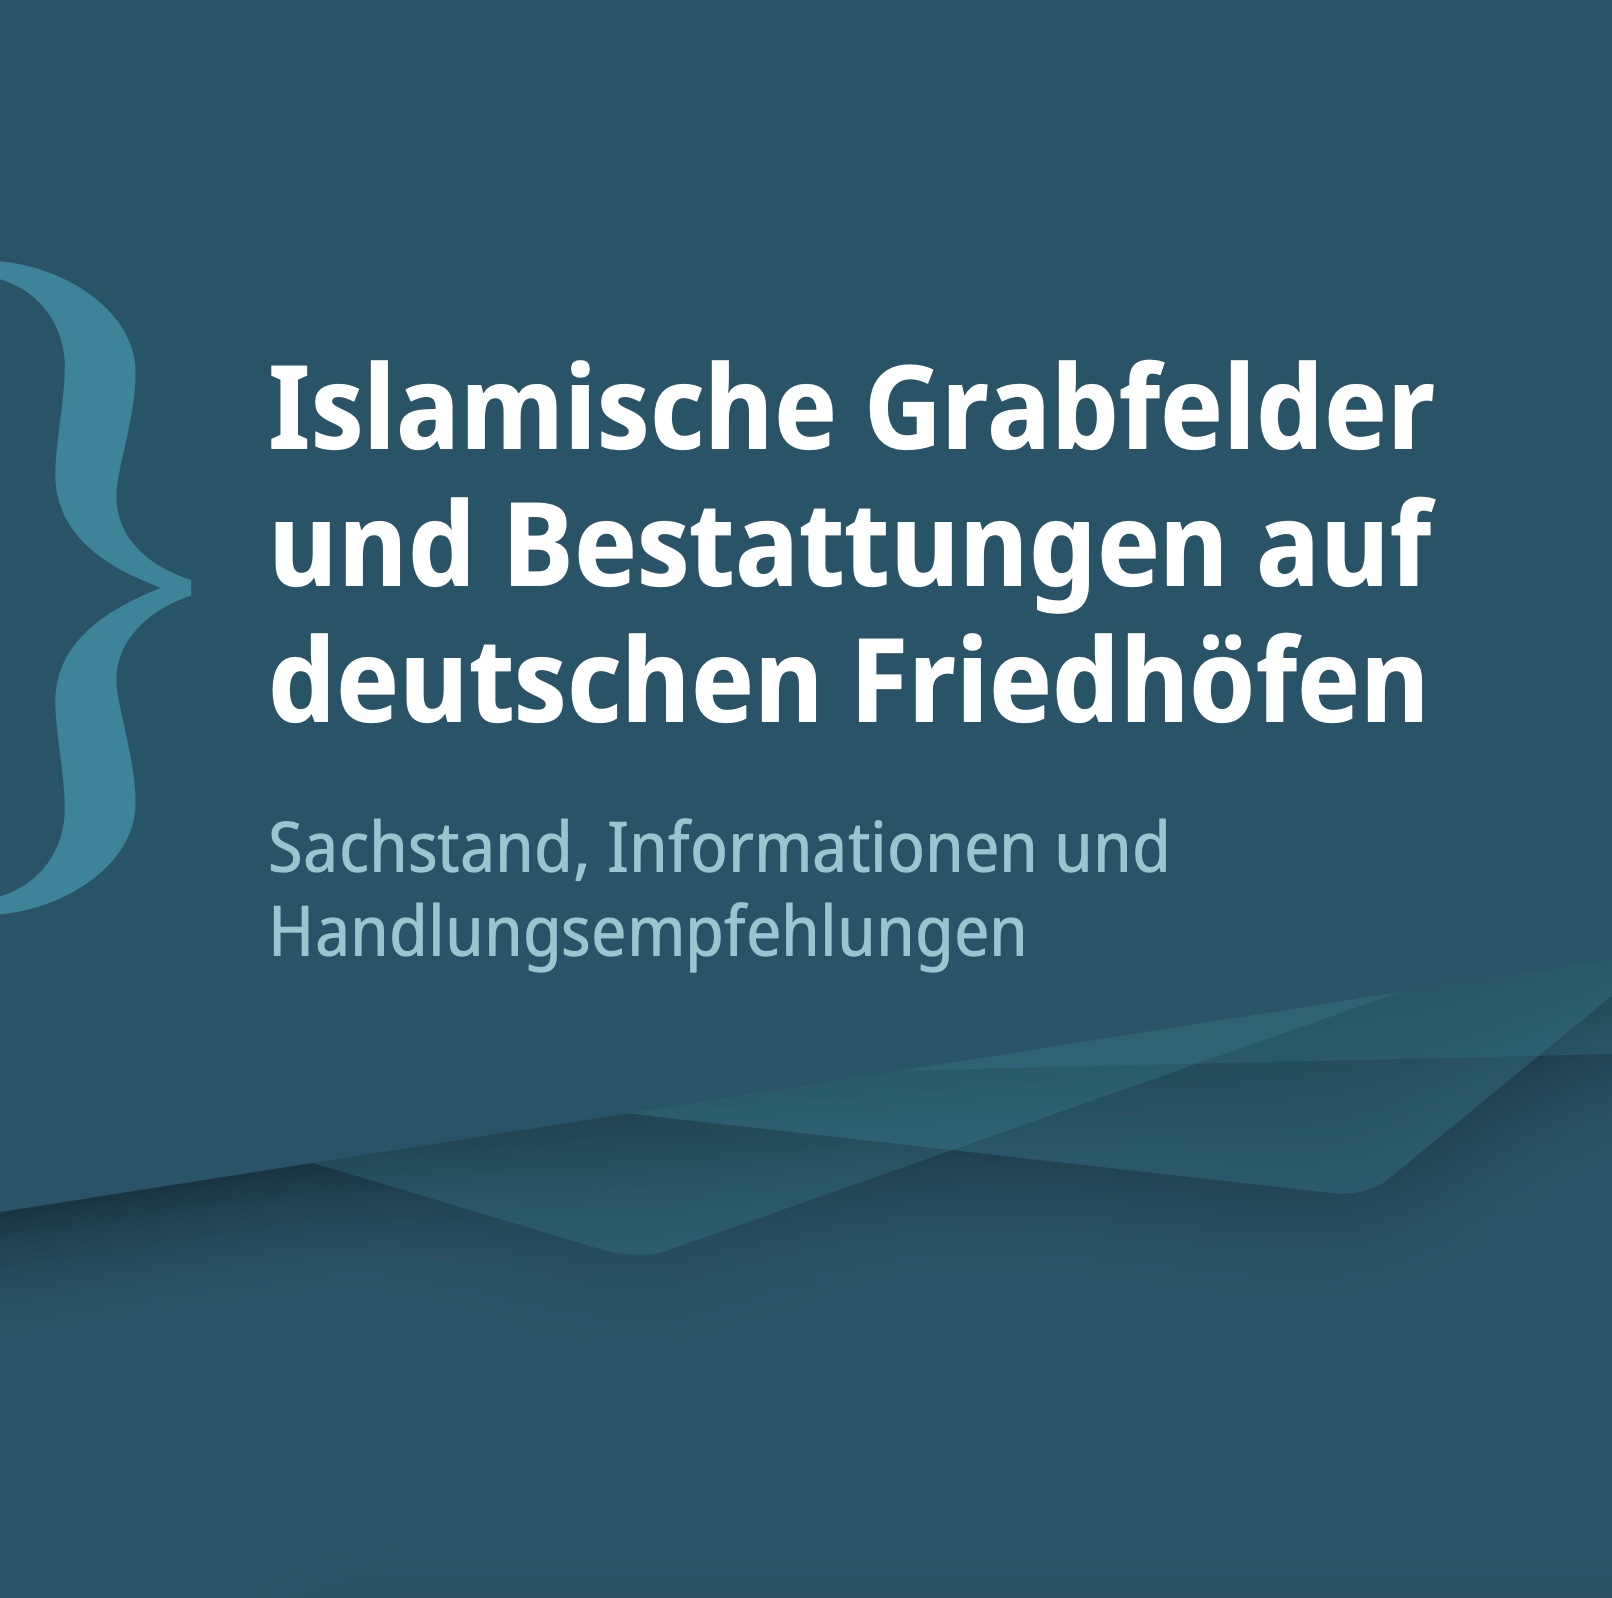 Immer mehr muslimische Bestattungen in Deutschland